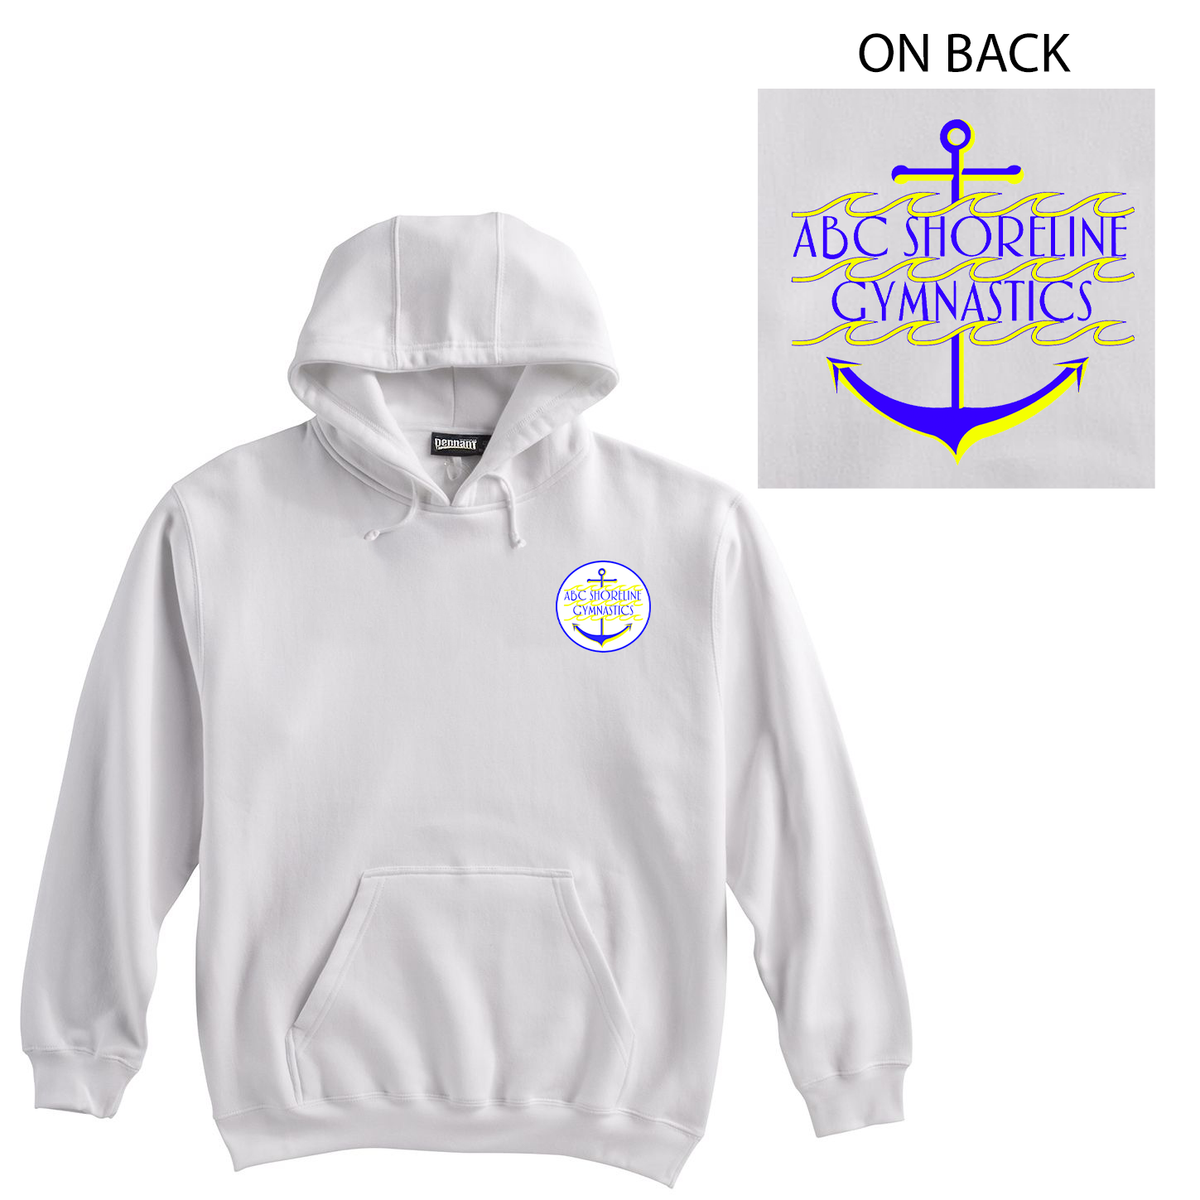 ABC Shoreline Gymnastics Sweatshirt